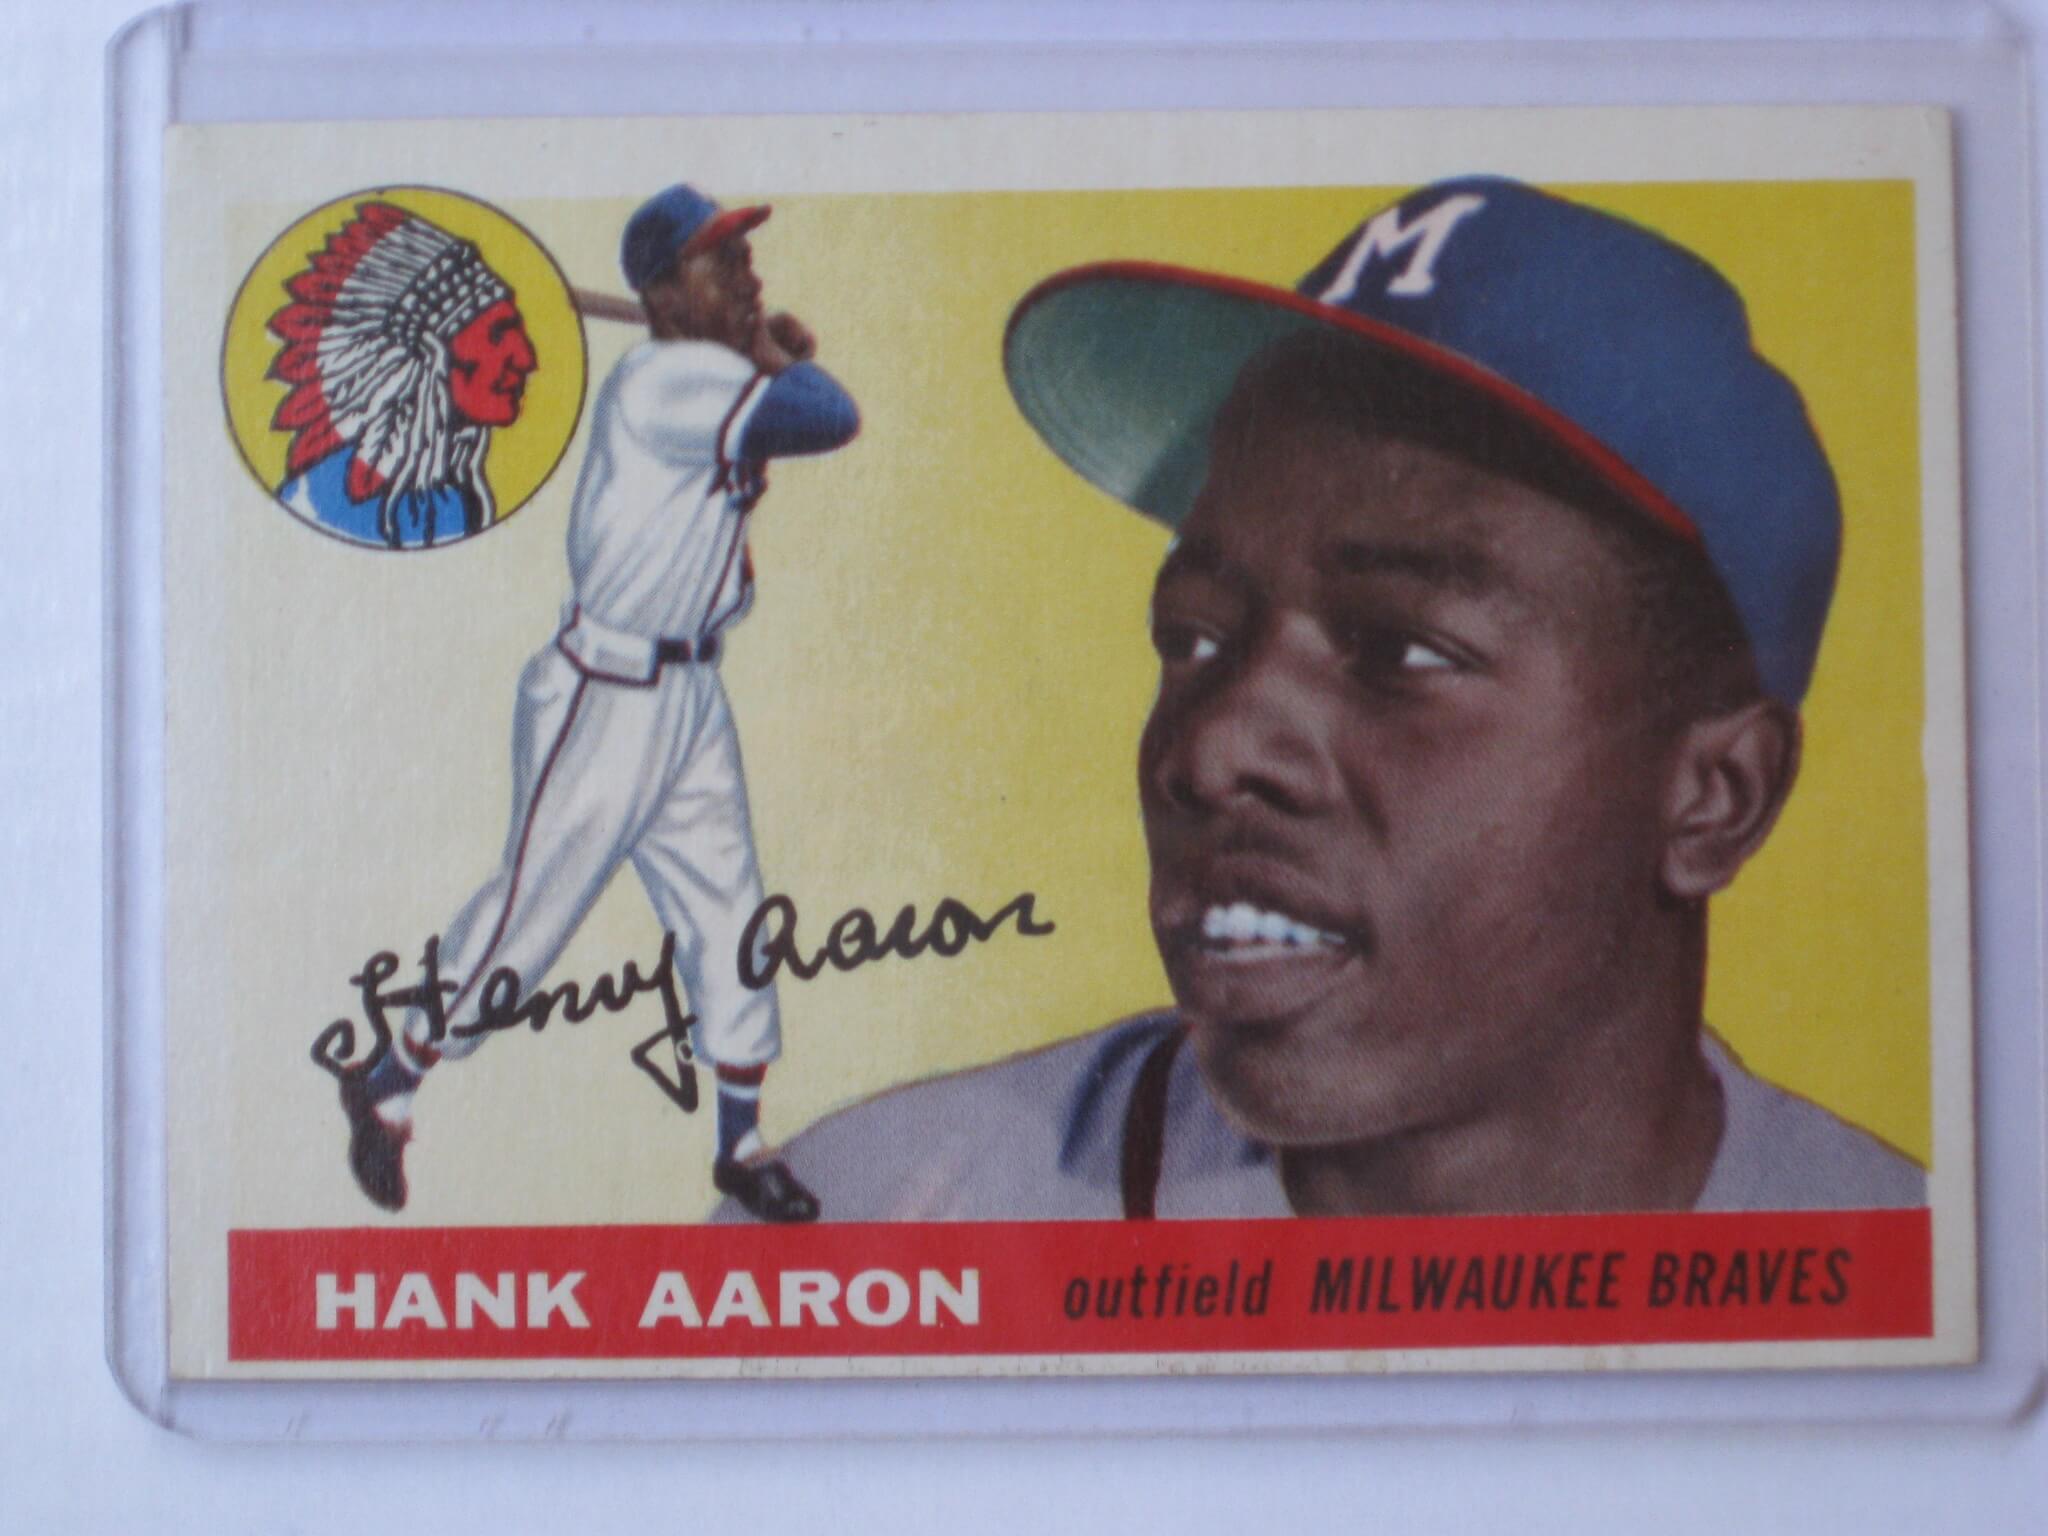 Hank Aaron 1955 Topps baseball card